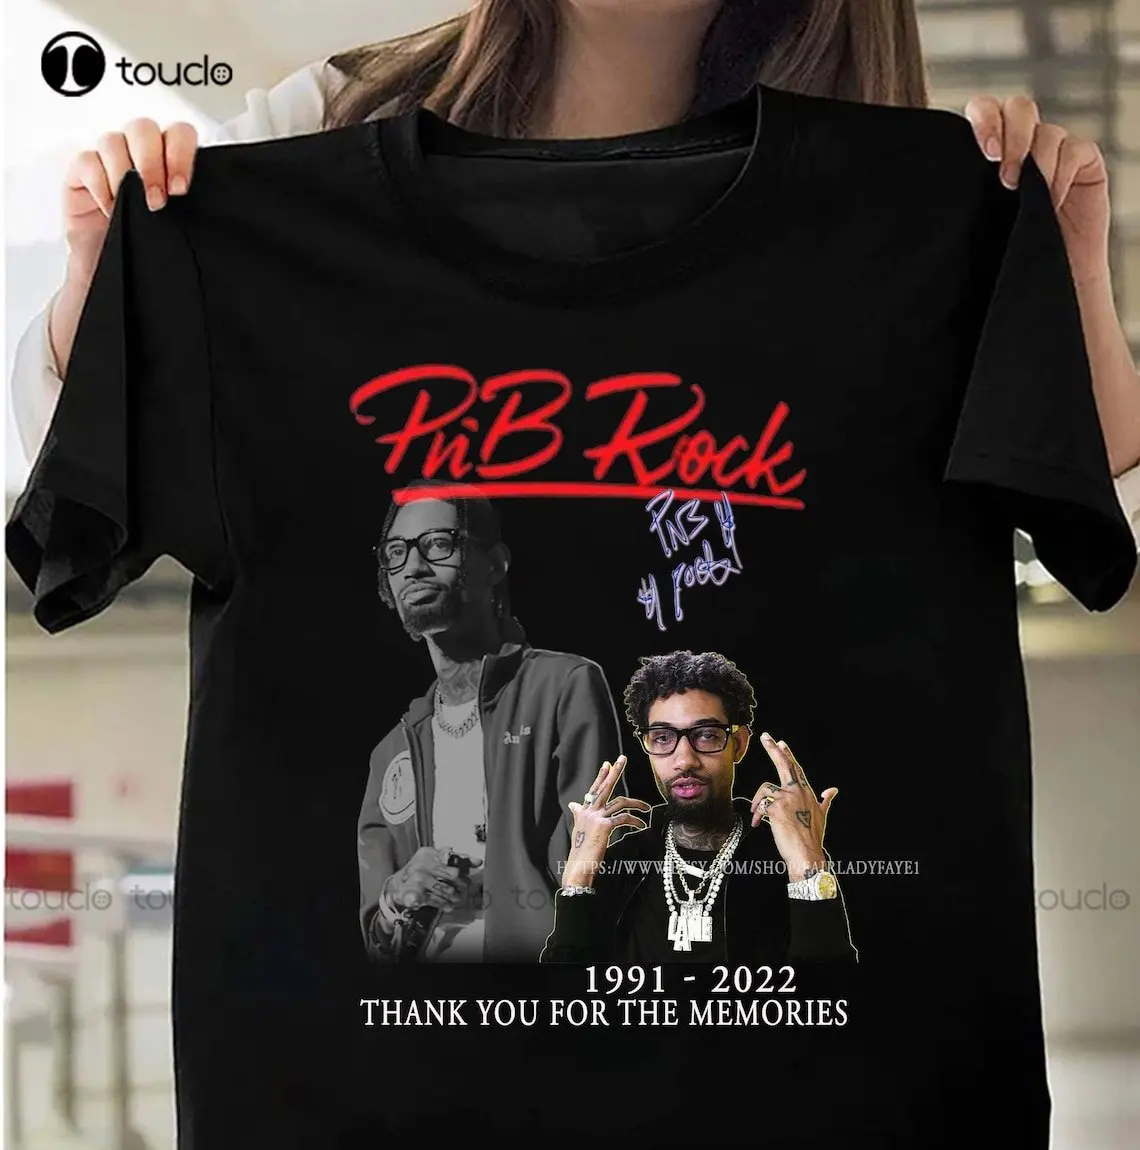 

Rip Pnb Rock 1991 - 2022 Tshirt Thank You Pnb Rock Shirt Rip Pnb Rock Shirt Rest In Peace Rapper Pnb Rock Shirt Unisex Xs-5Xl